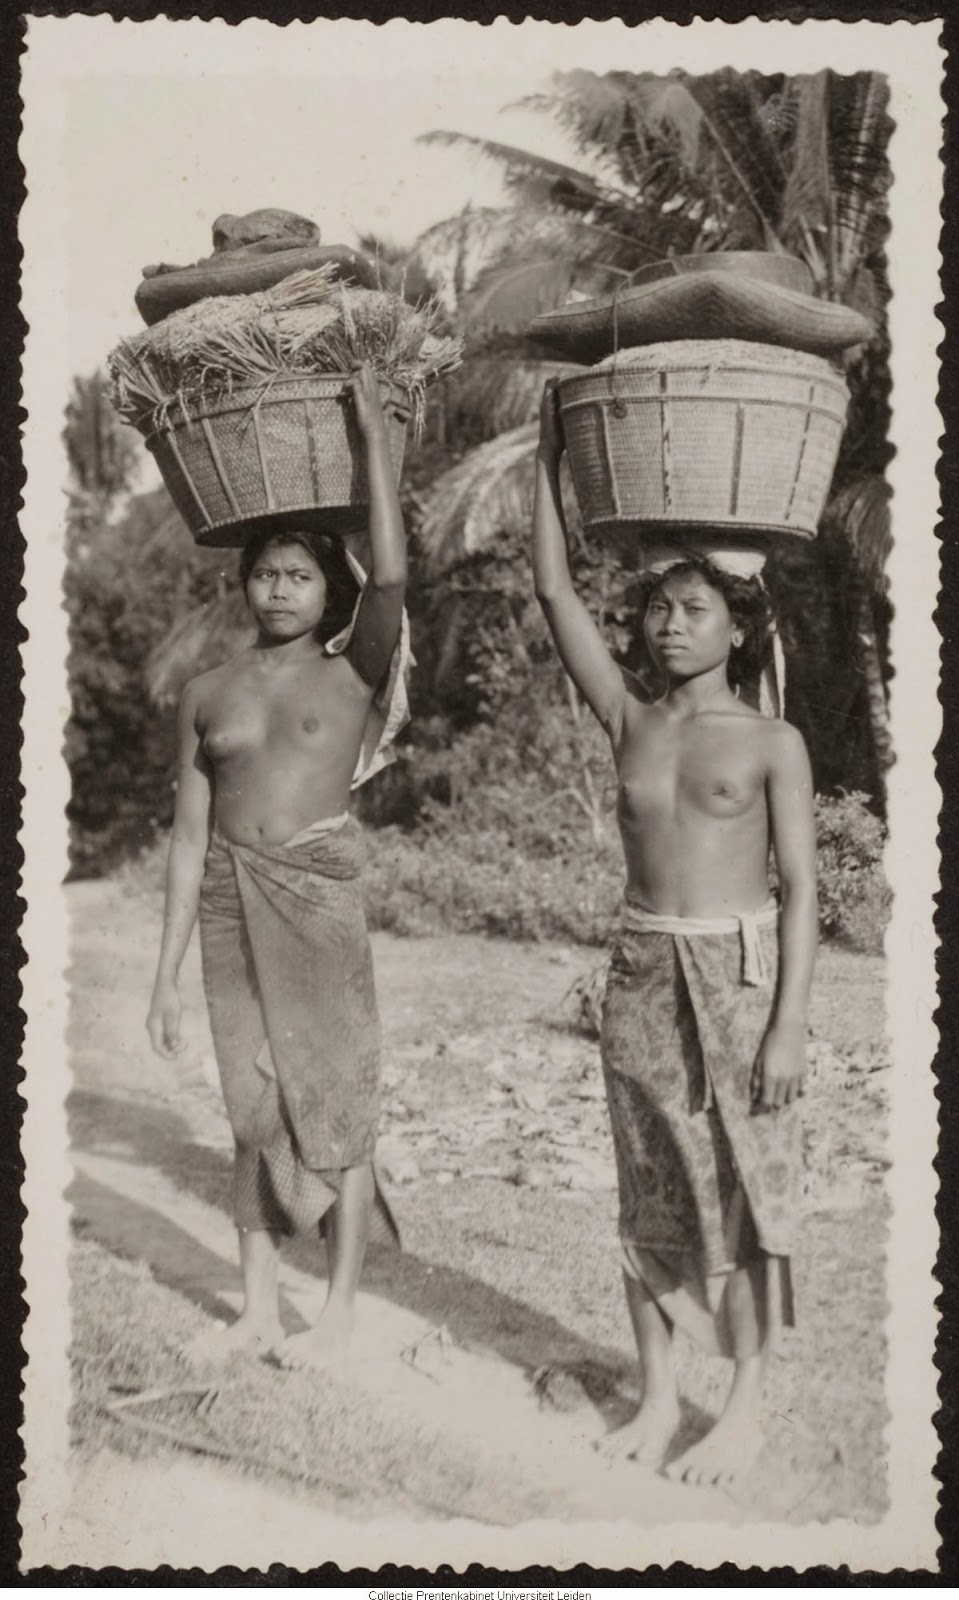 kumpulan-foto-gadis-bali-tempoe-doeloe-telanjang-dada-tahun-1910-1930-balinese-topless-girls-vintage-photography-12